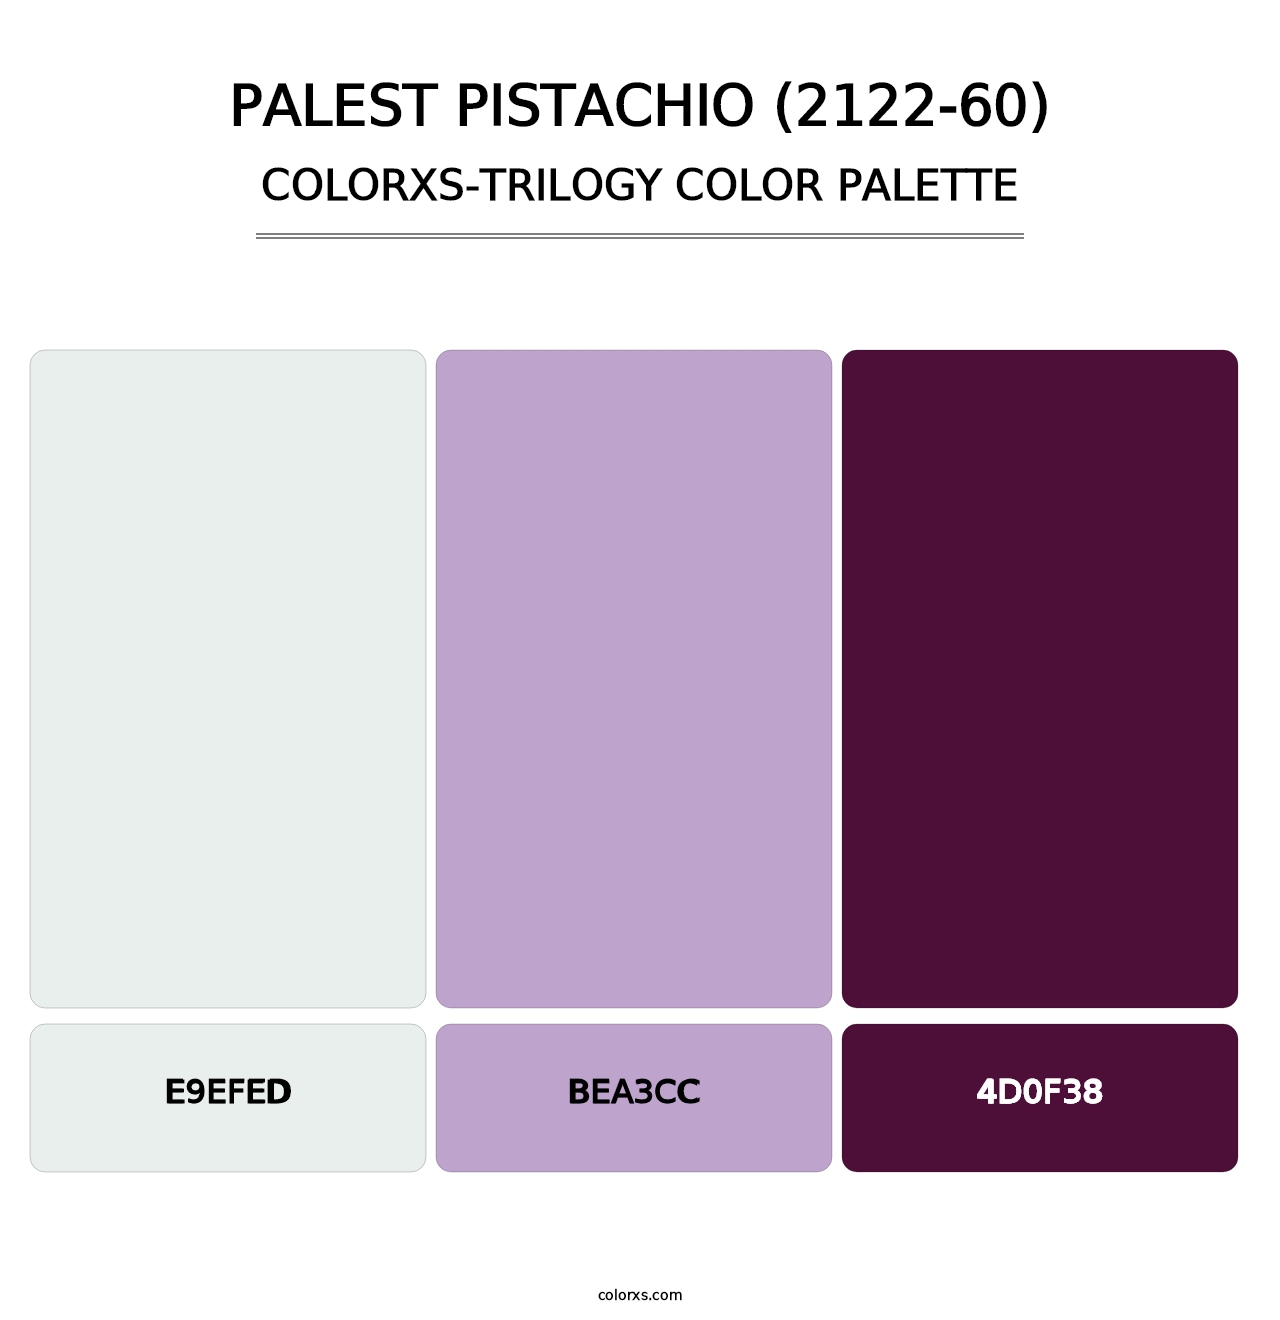 Palest Pistachio (2122-60) - Colorxs Trilogy Palette